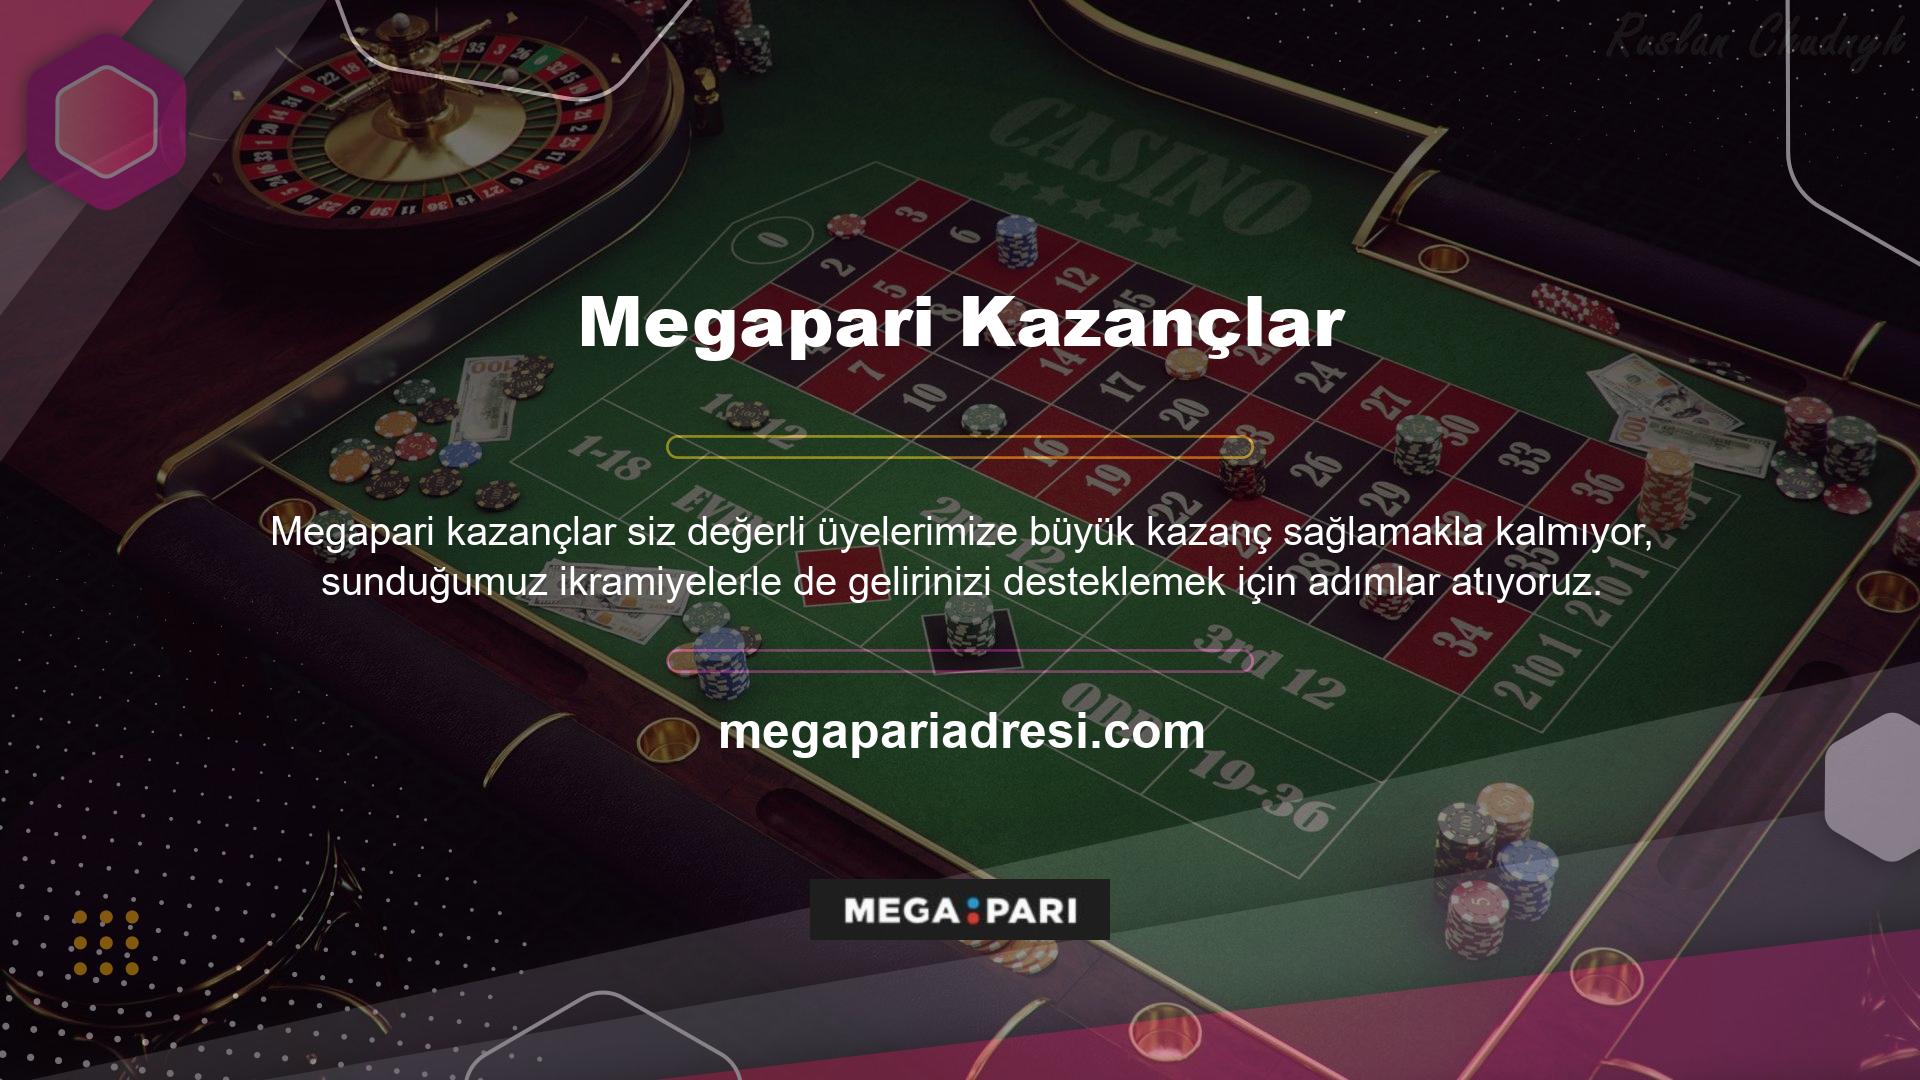 Sitede ayrıca maçları anında izlemenizi sağlayan Megapari Spor TV özelliği de bulunmaktadır